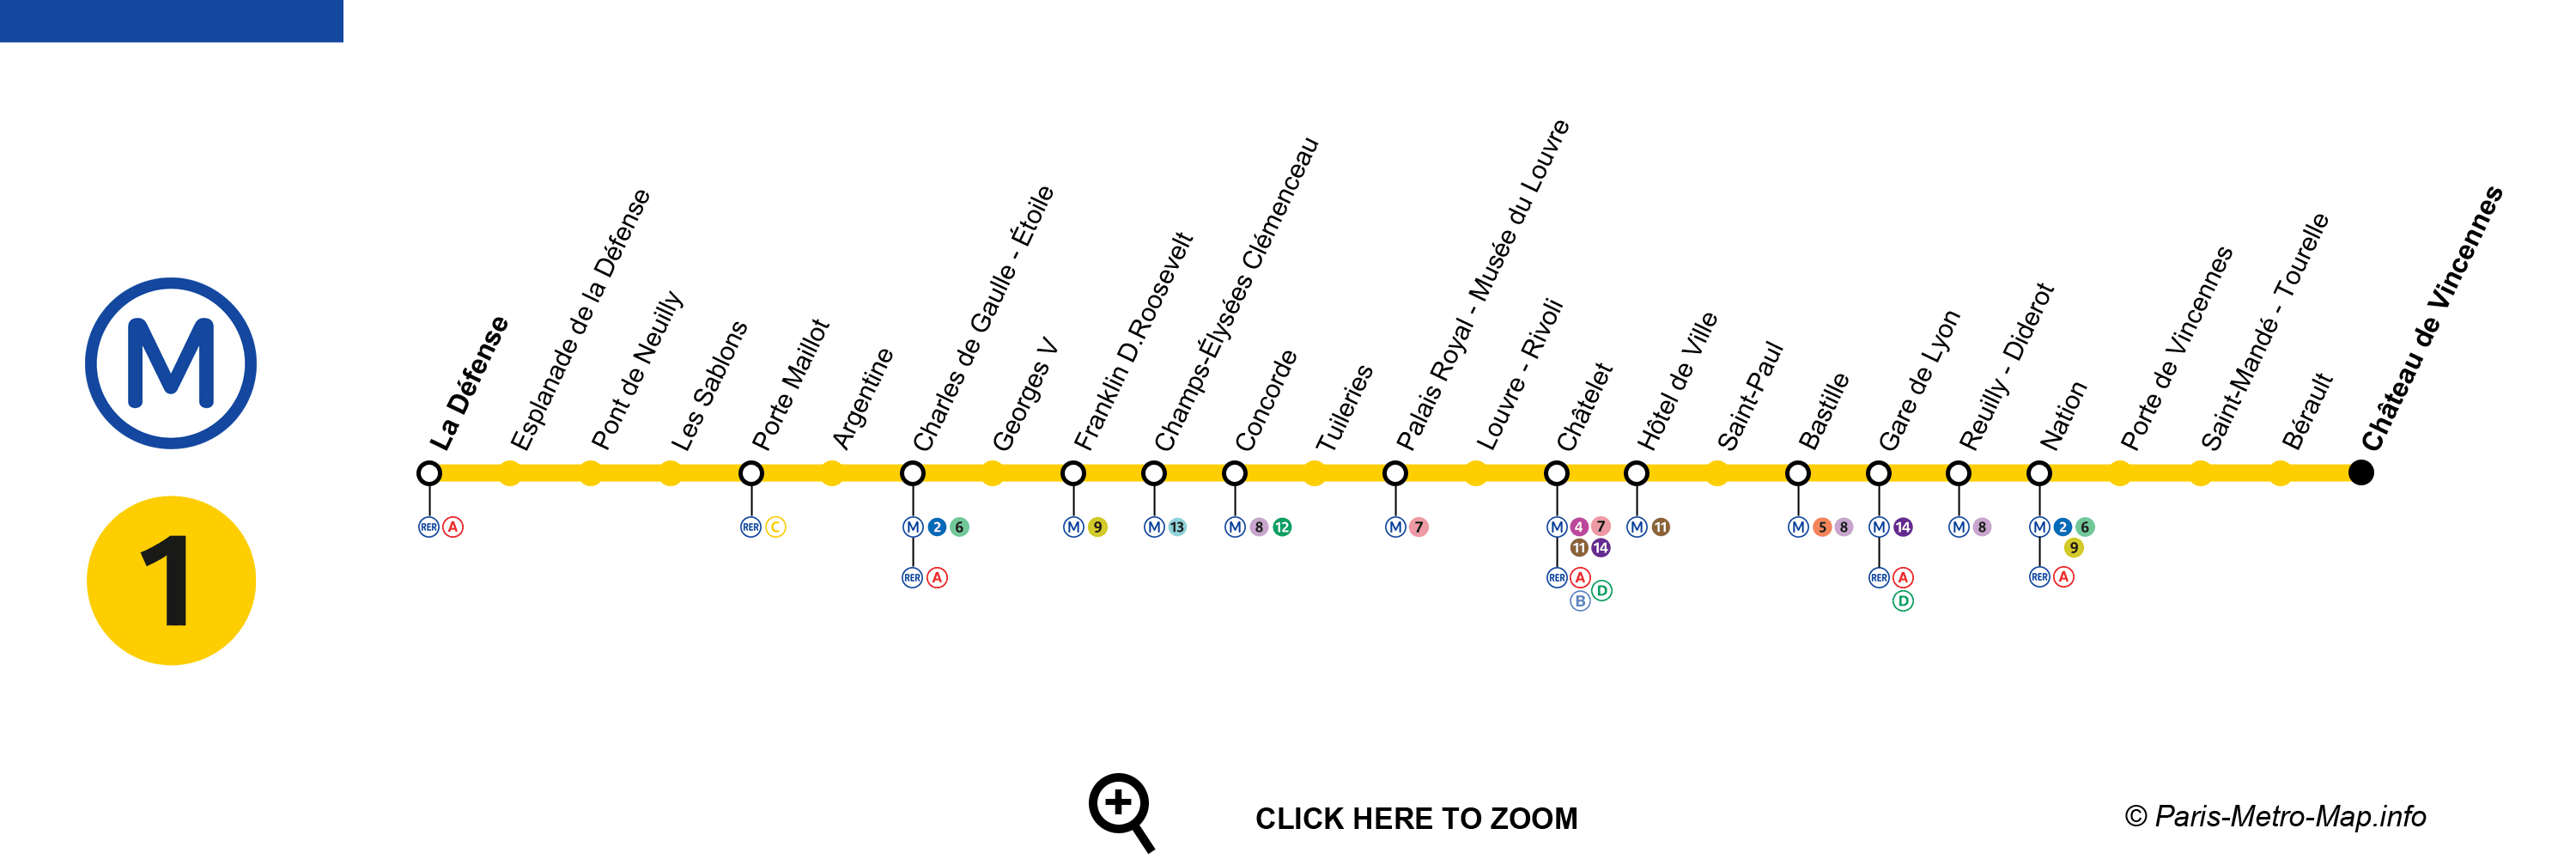 Paris metro 1 map